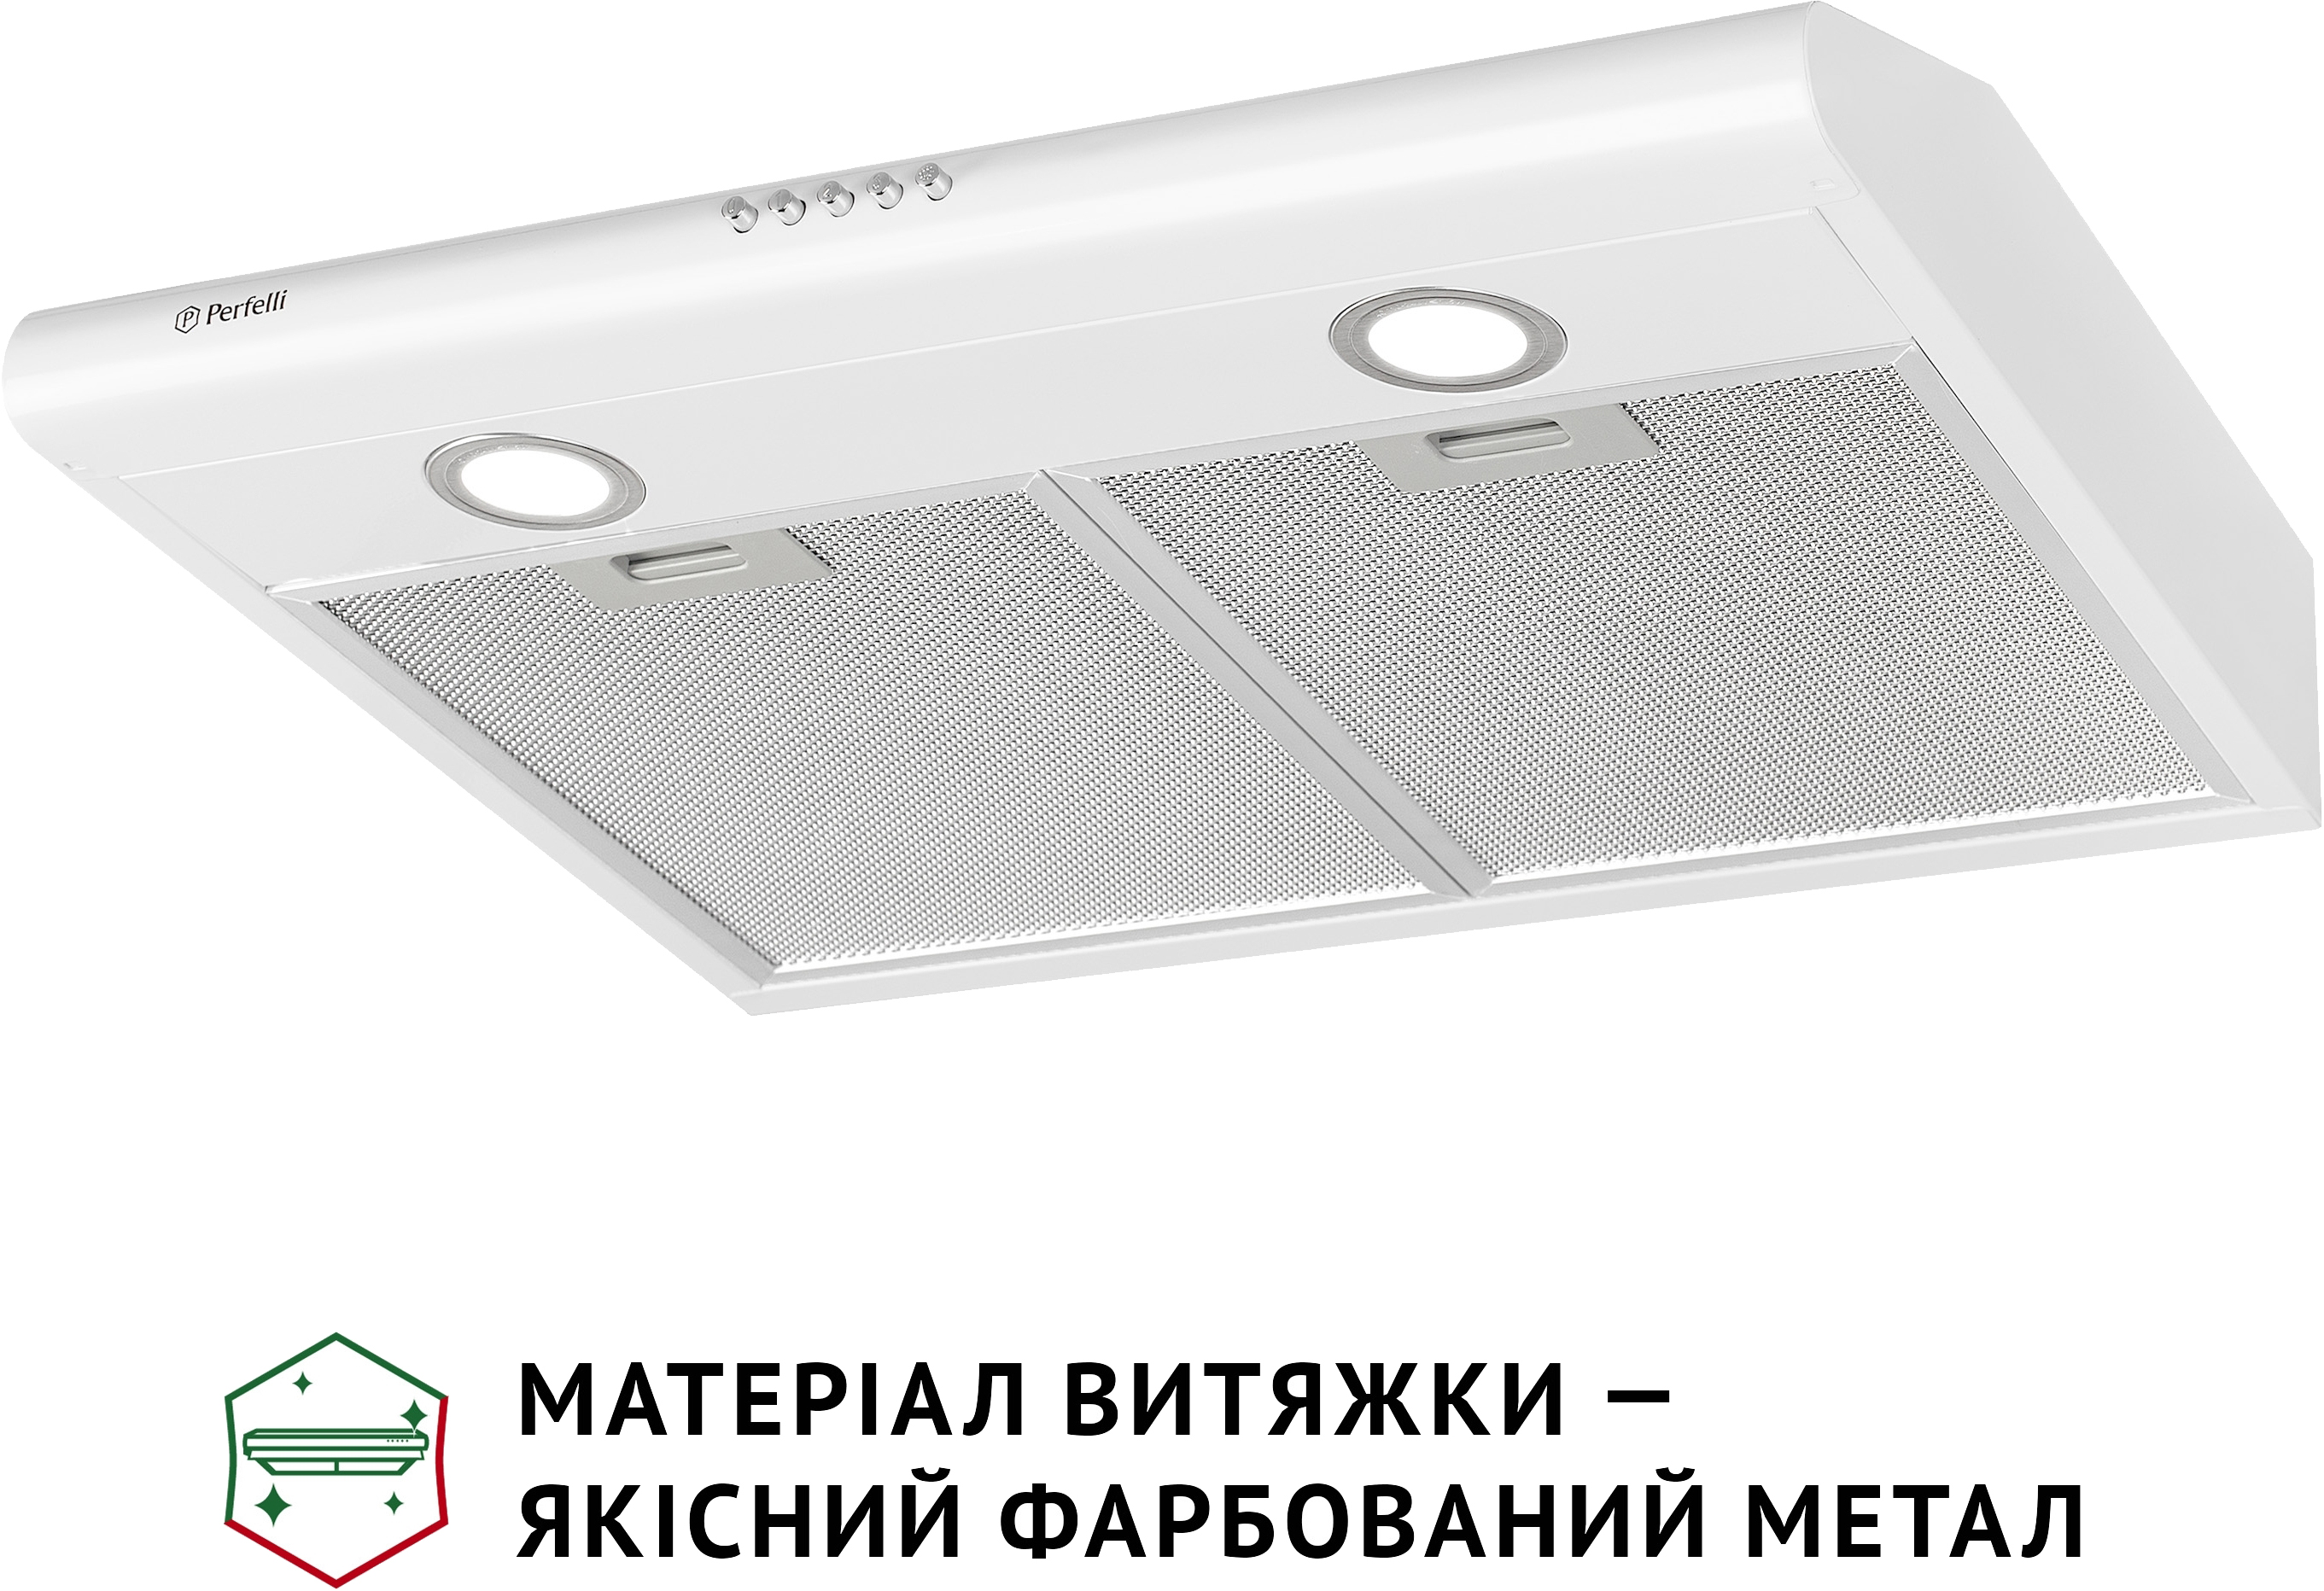 продаём Perfelli PL 6022 W LED в Украине - фото 4